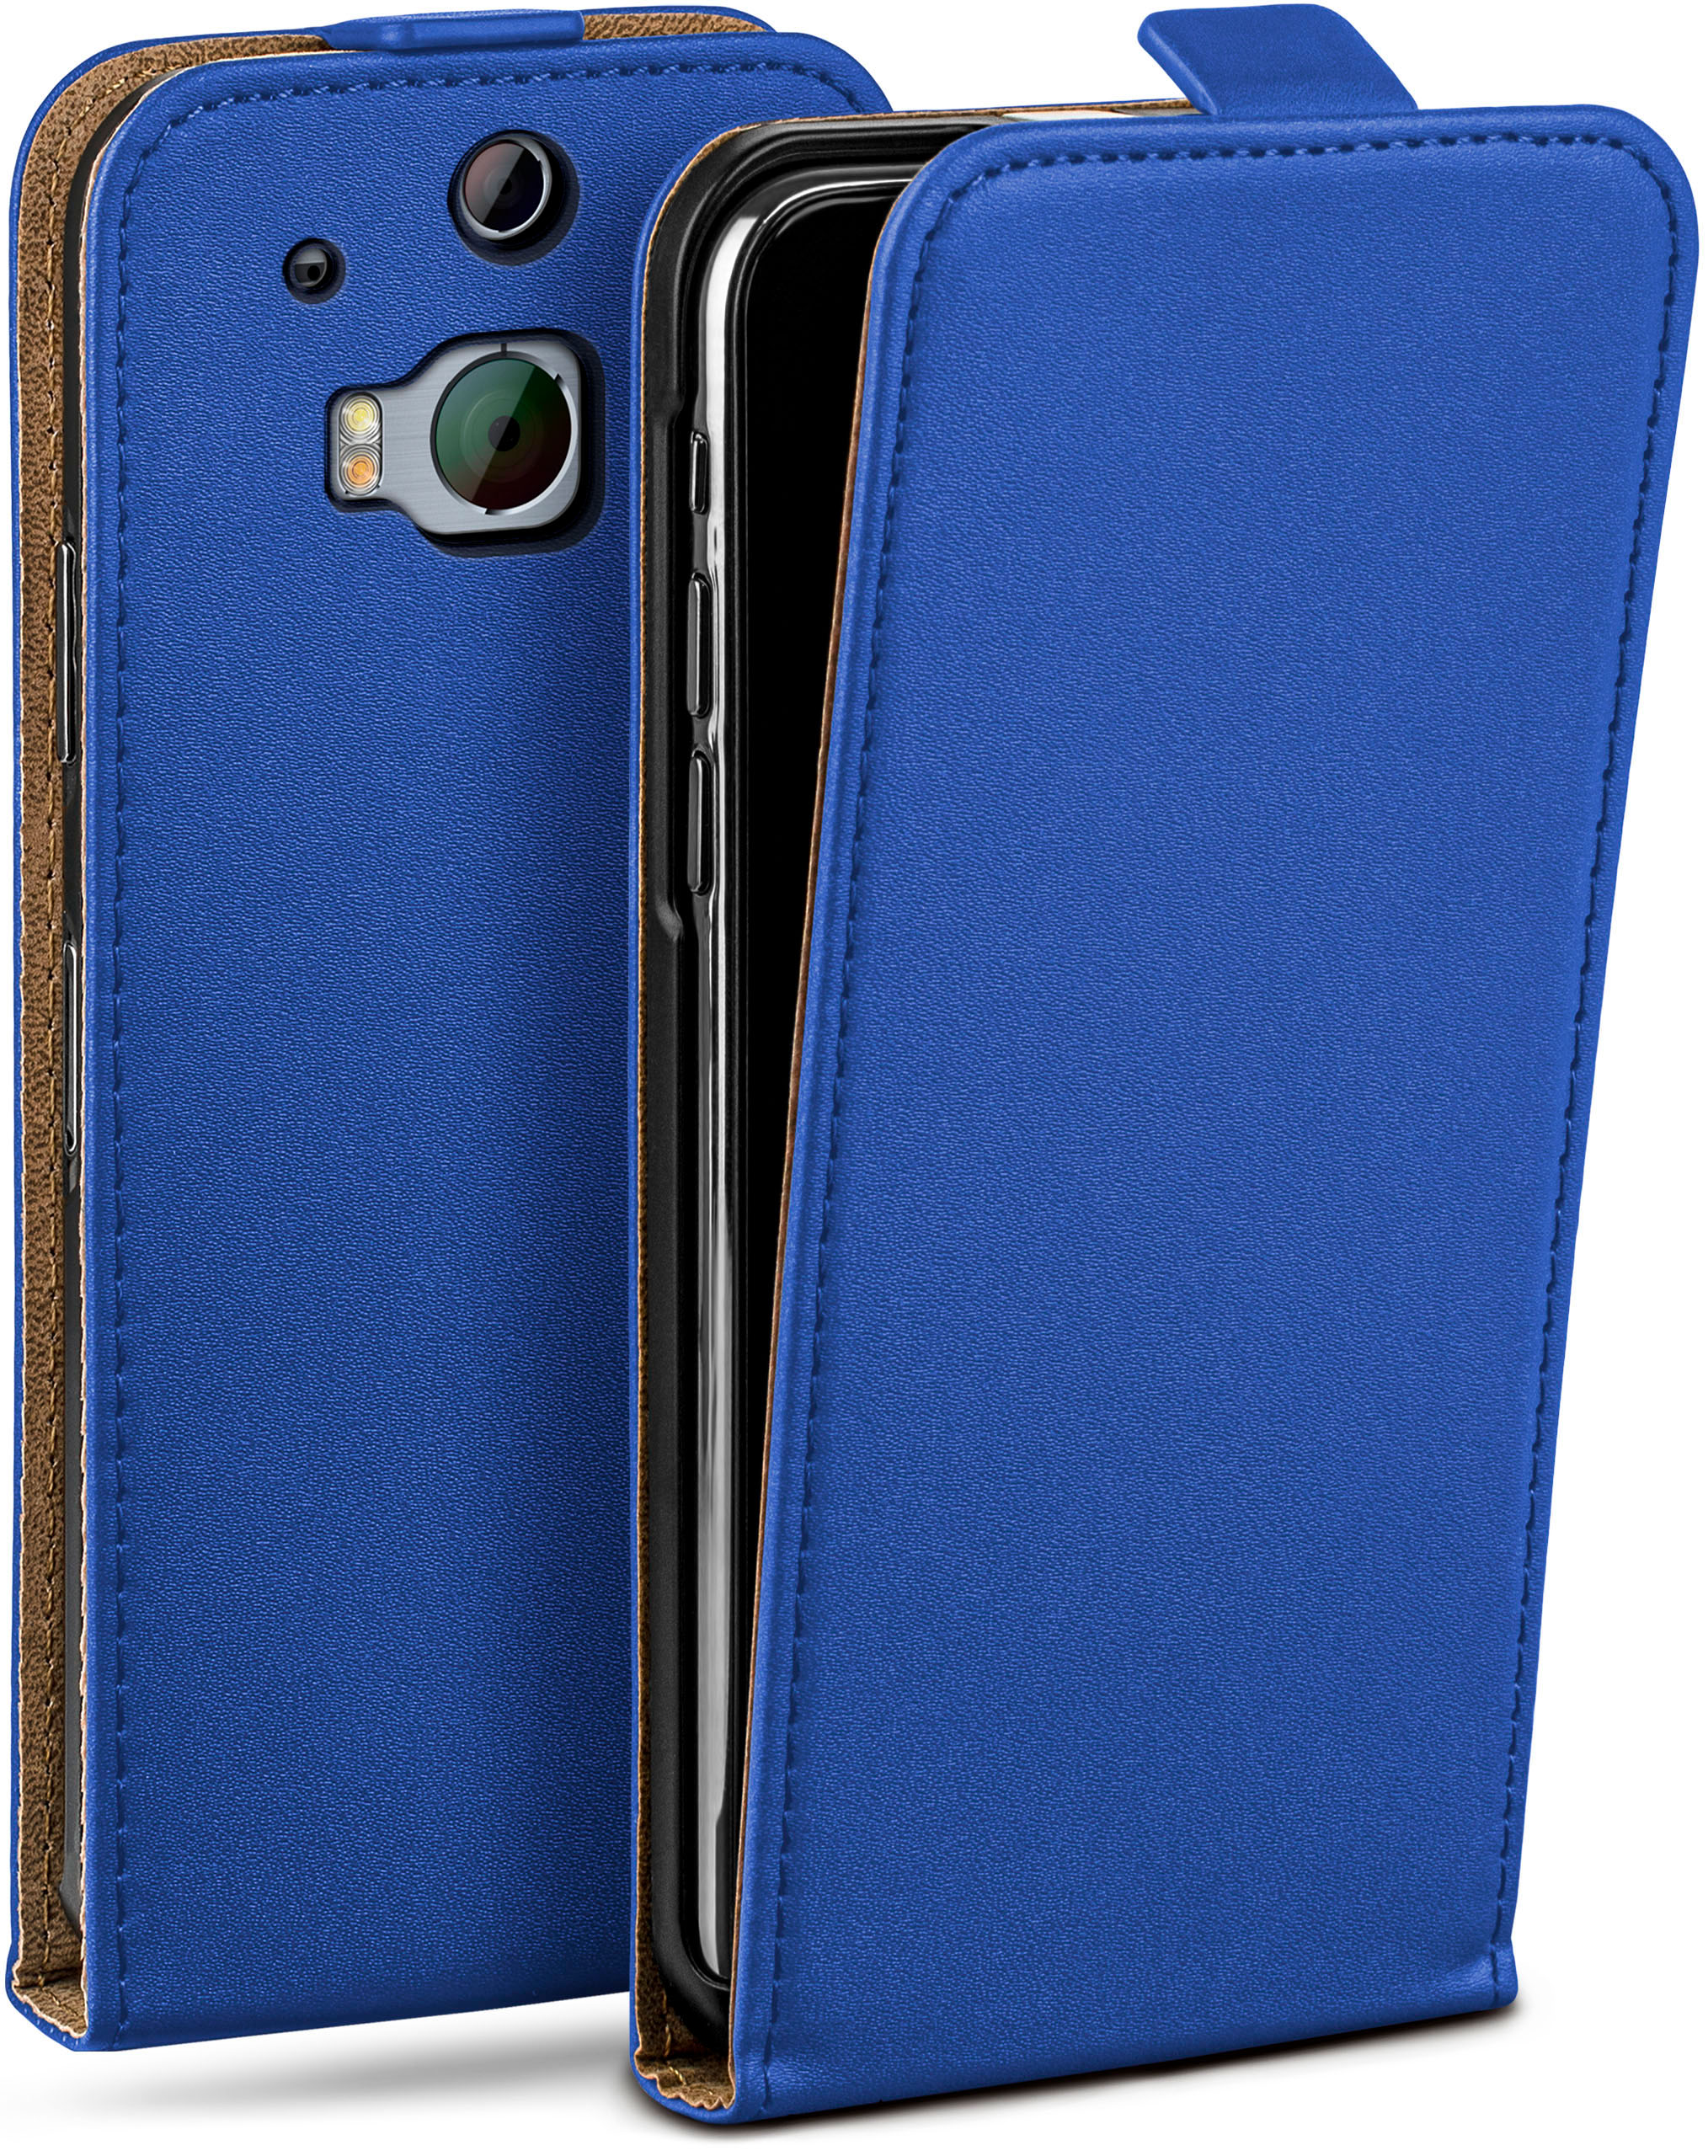 Case, Royal-Blue One M8 M8s, HTC, MOEX Cover, / Flip Flip